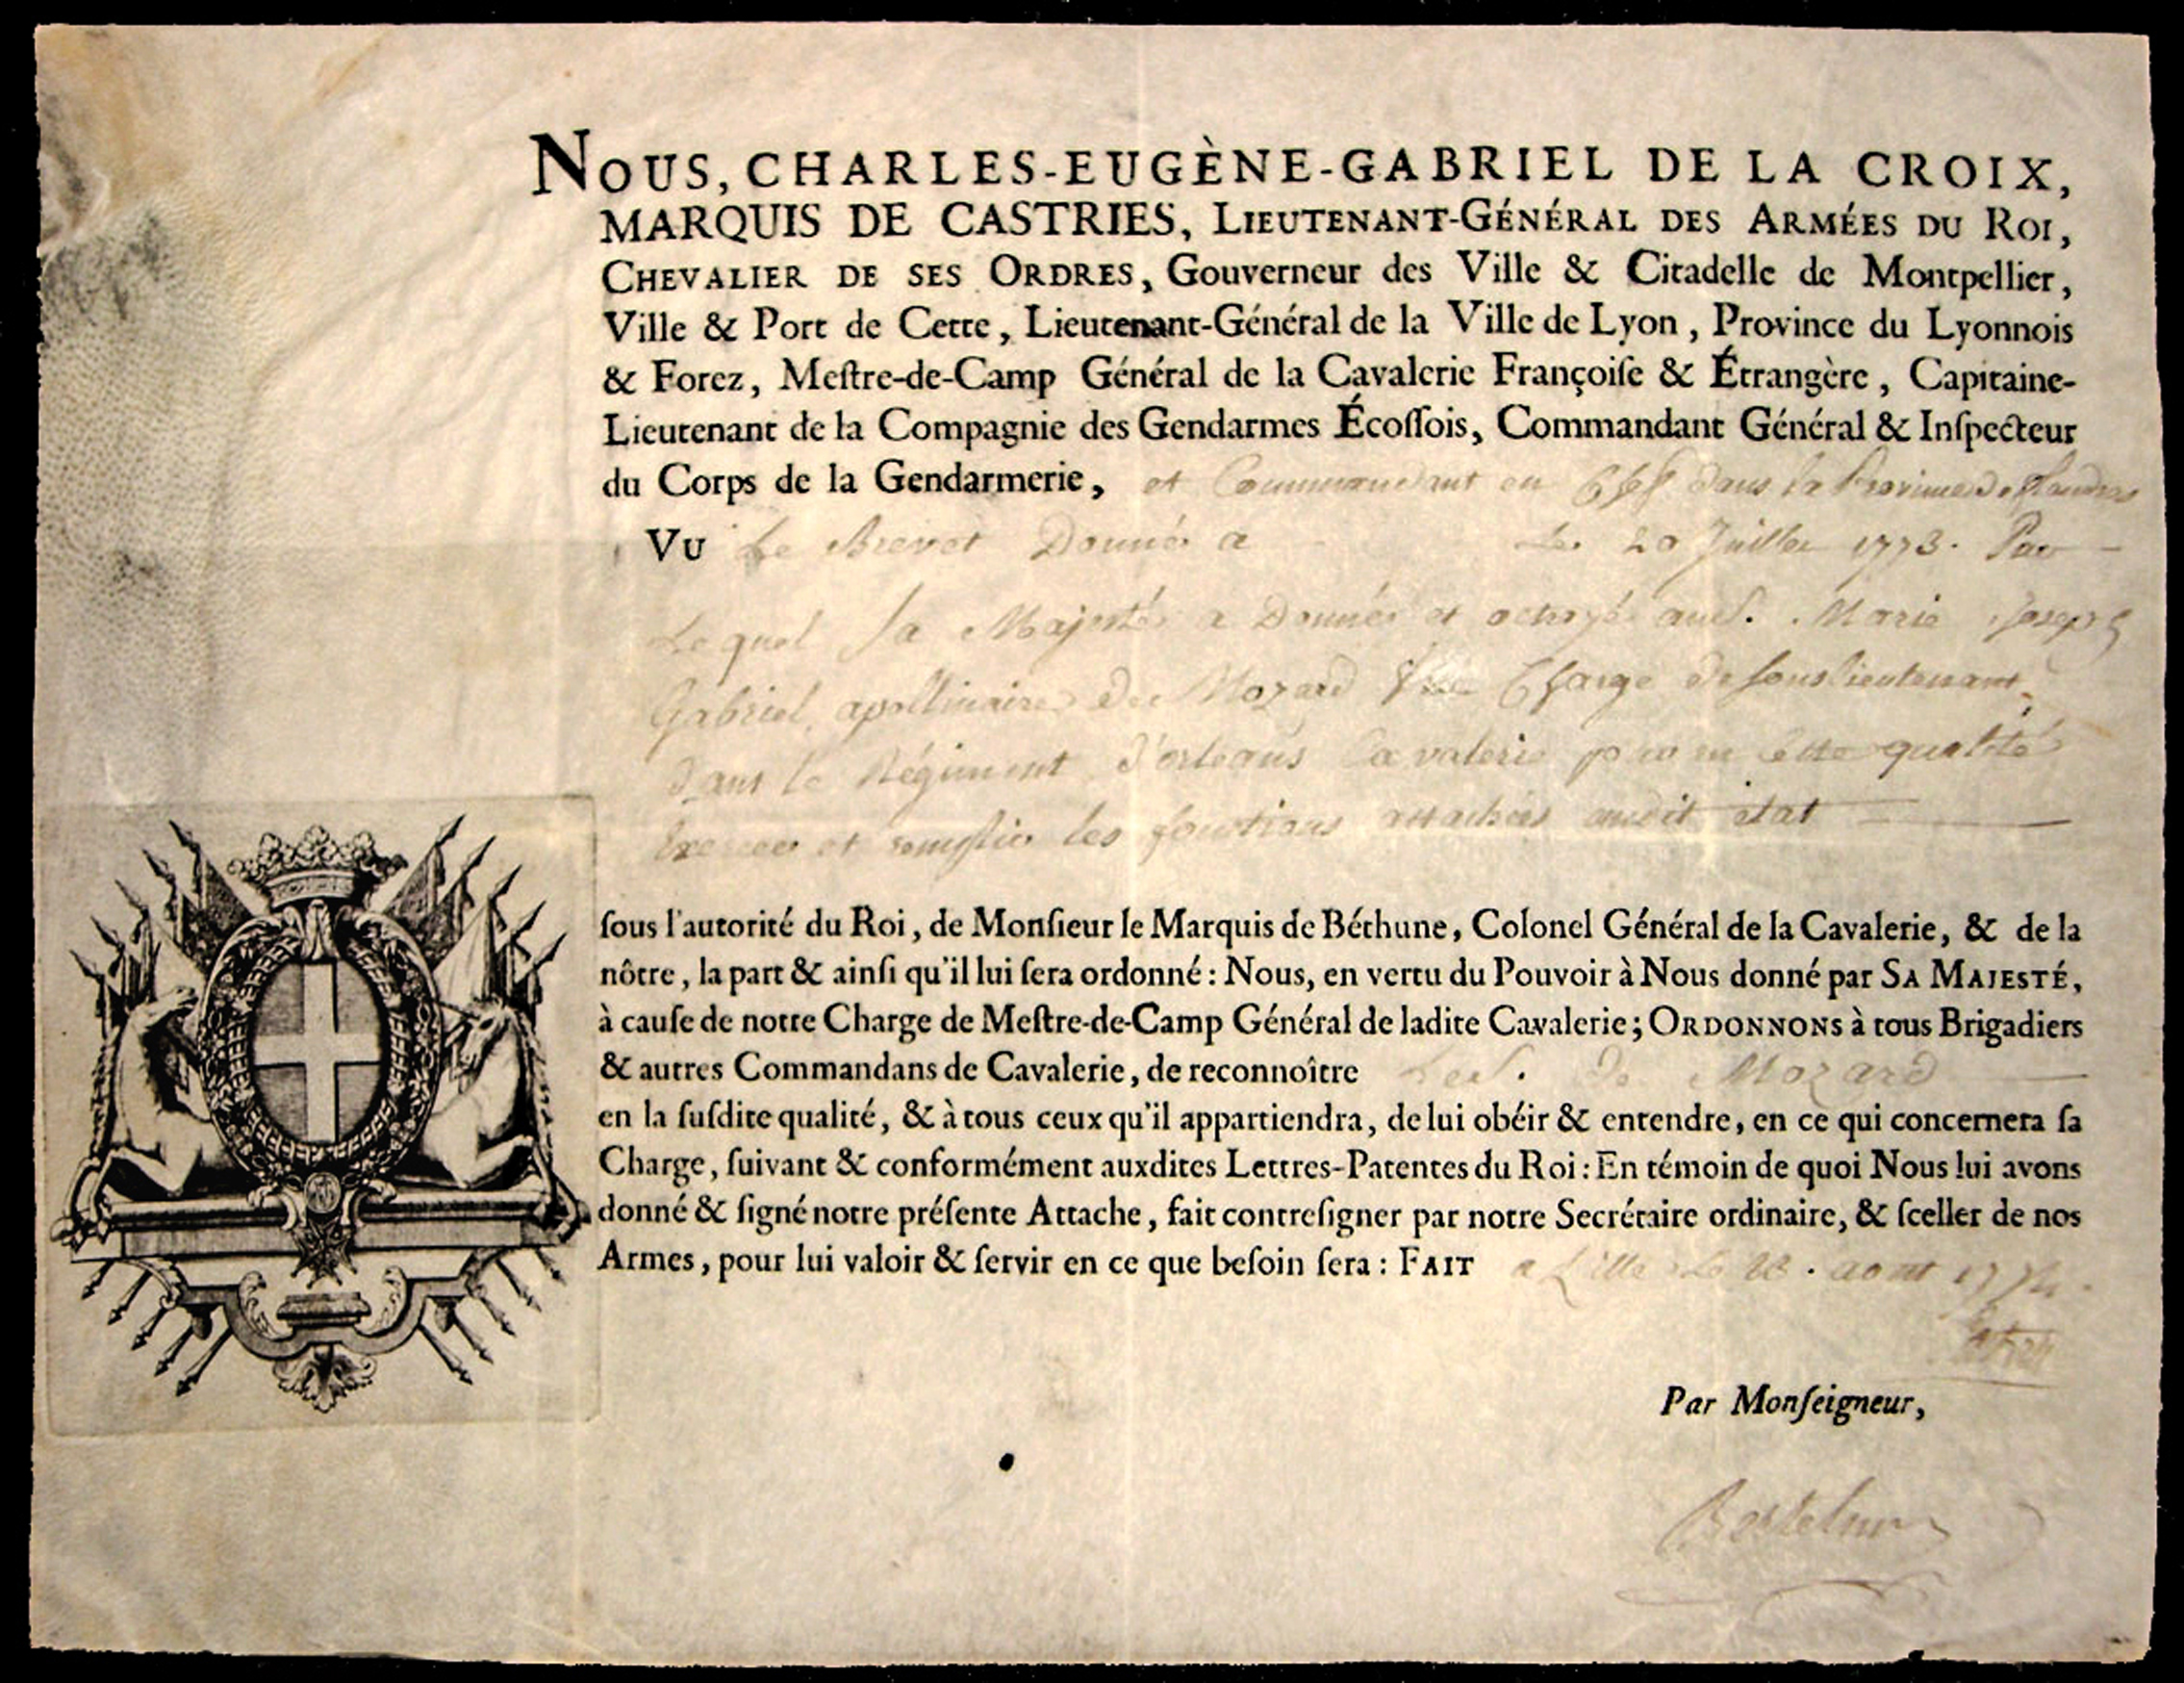 Referenz: la-croix-de-castries-charle-eugene-gabriel-de-marquis-de-castries-marechal